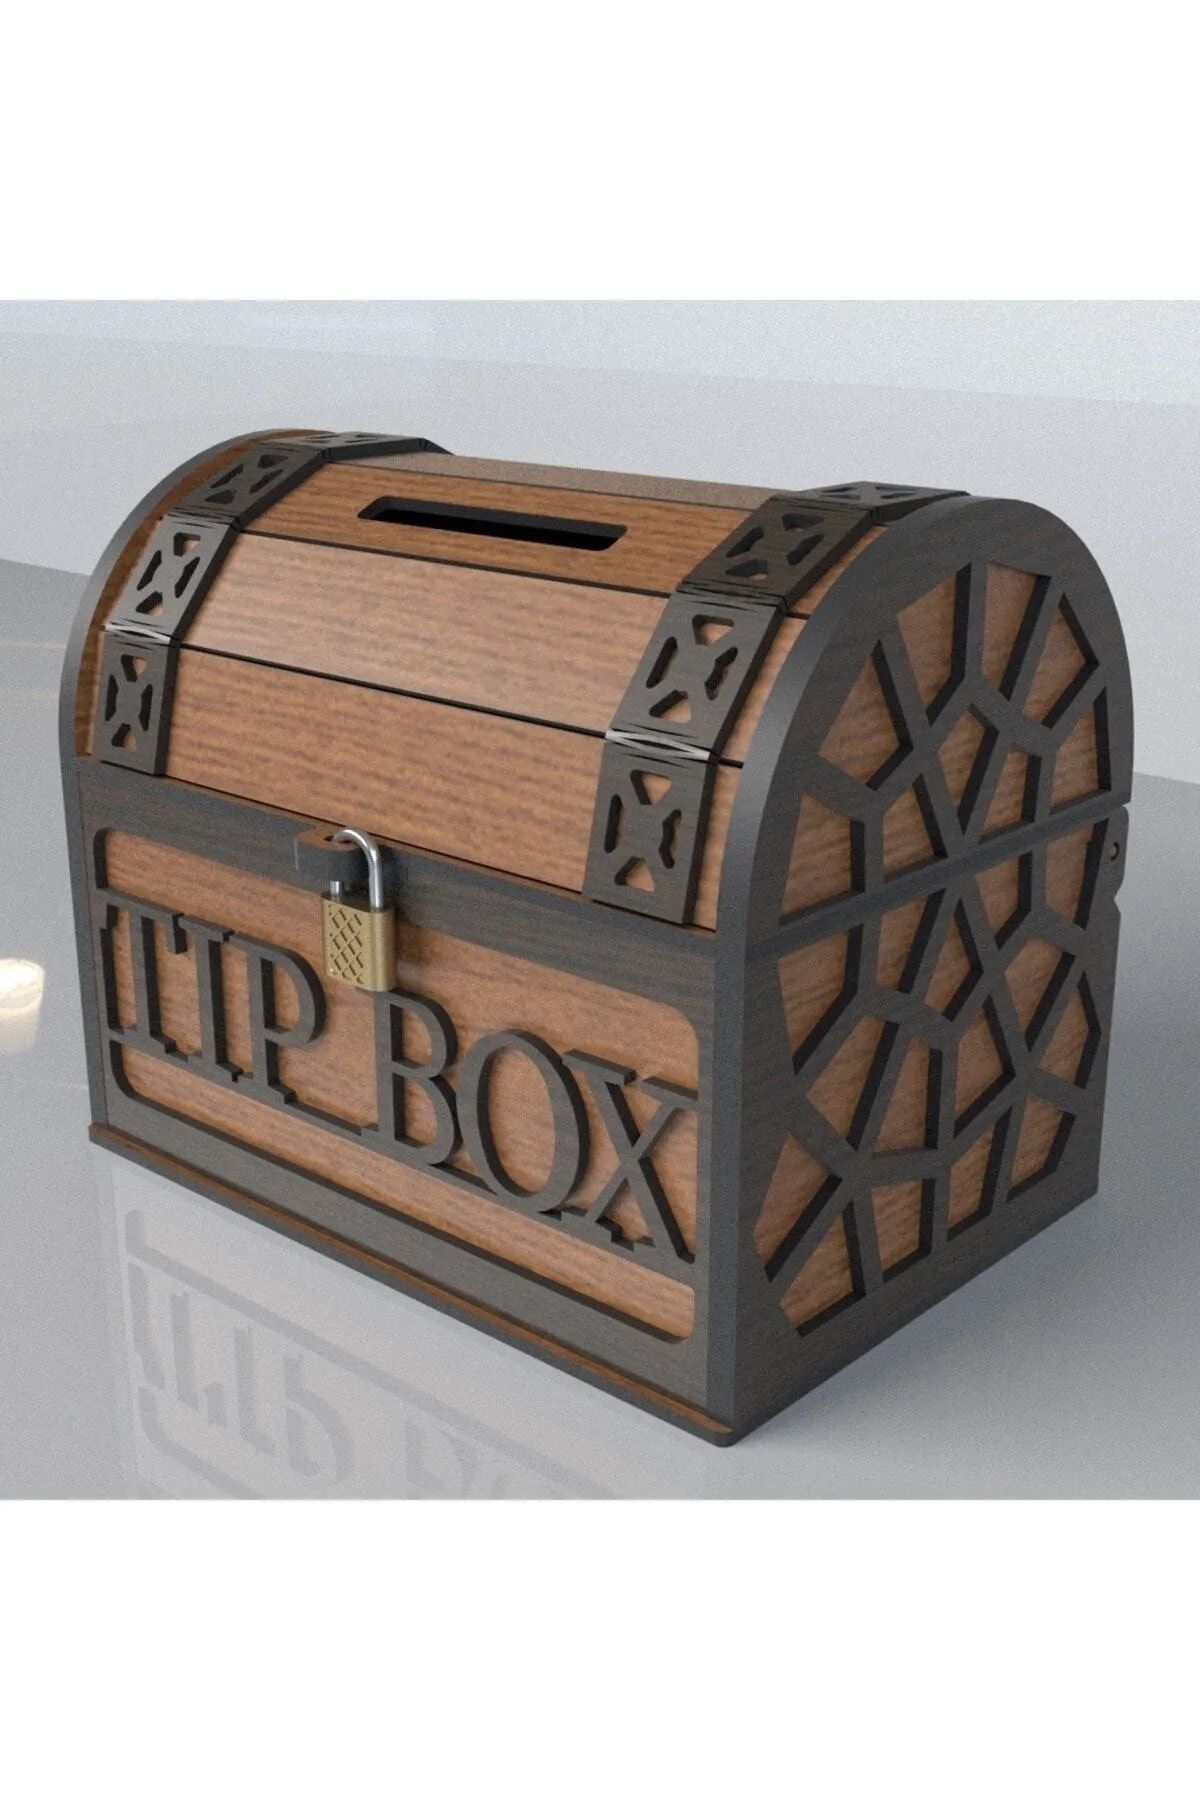 Demo Tasarım Tip Box Bahşiş kutusu ve Kumbara Sandık Tipi Tipbox Ceviz Ahşap